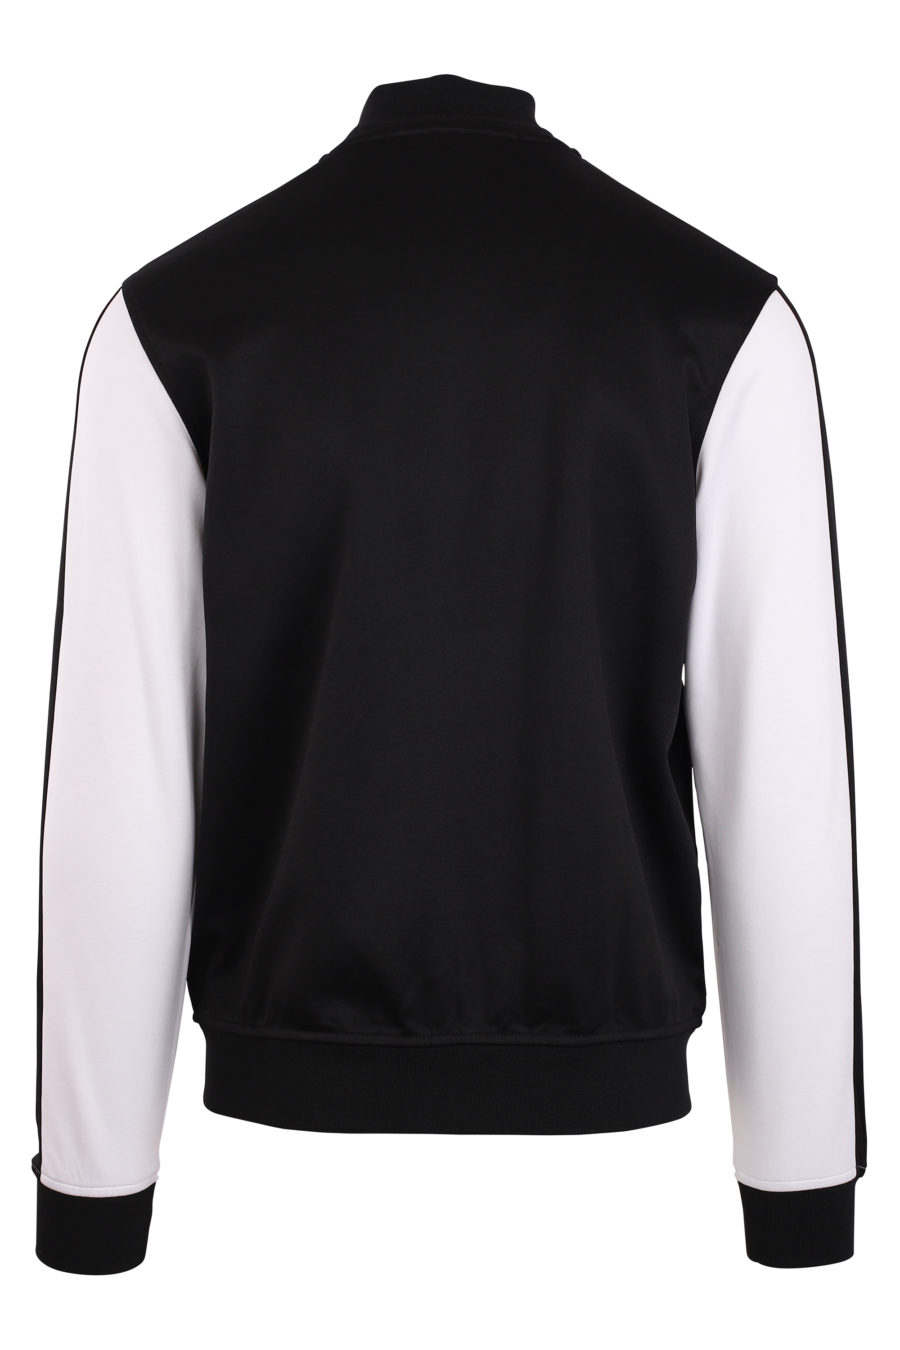 Veste noire avec manches blanches et logo blanc - IMG 0932